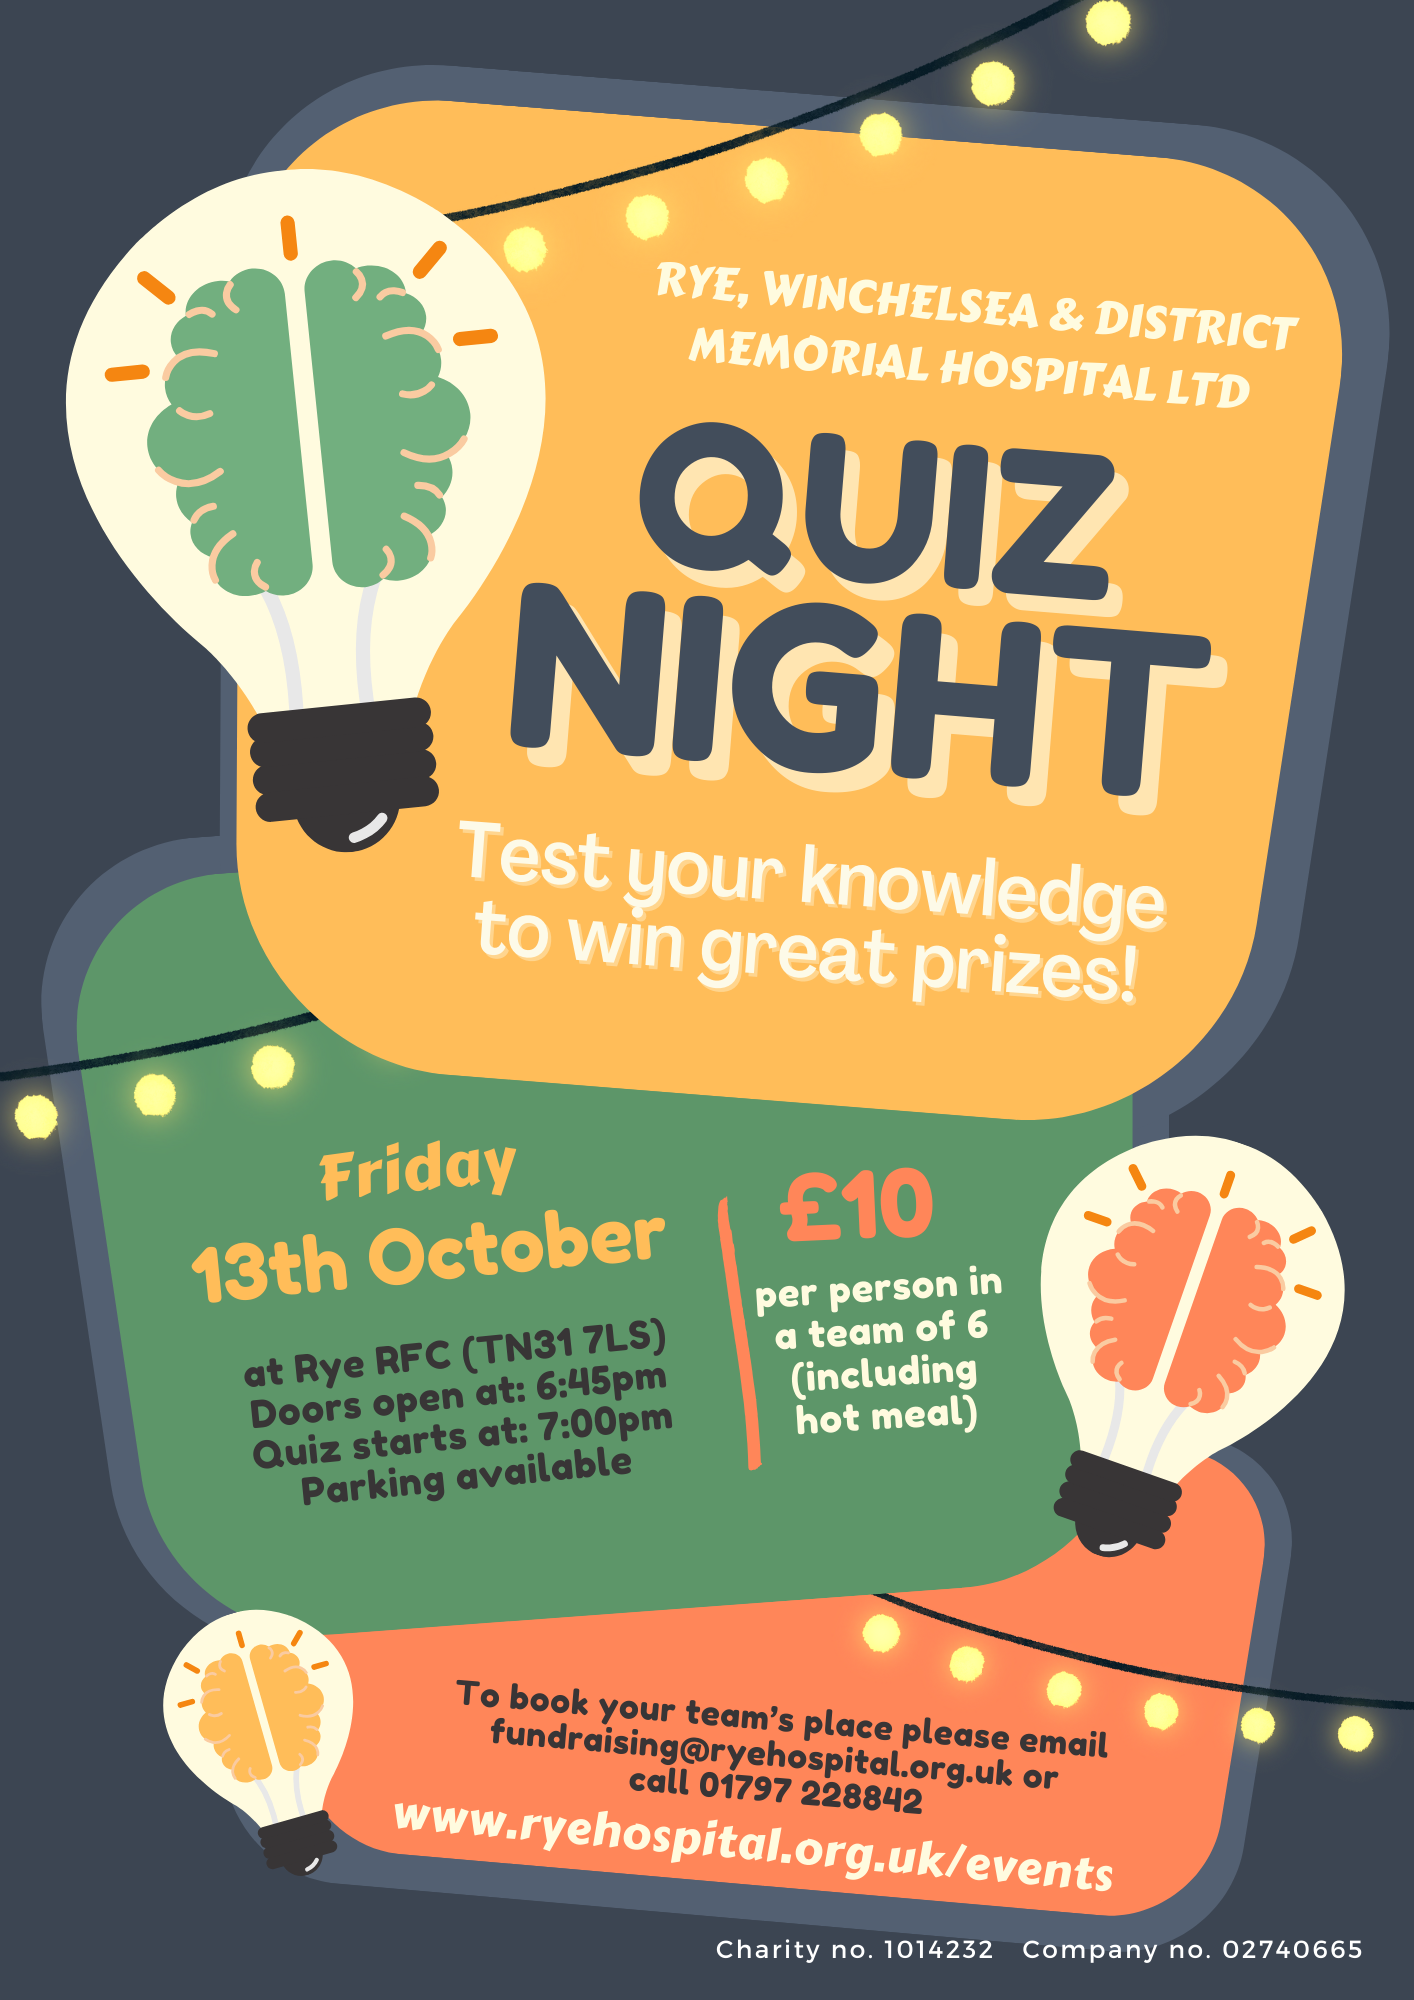 Flyer advertising Quiz Night on 13th October